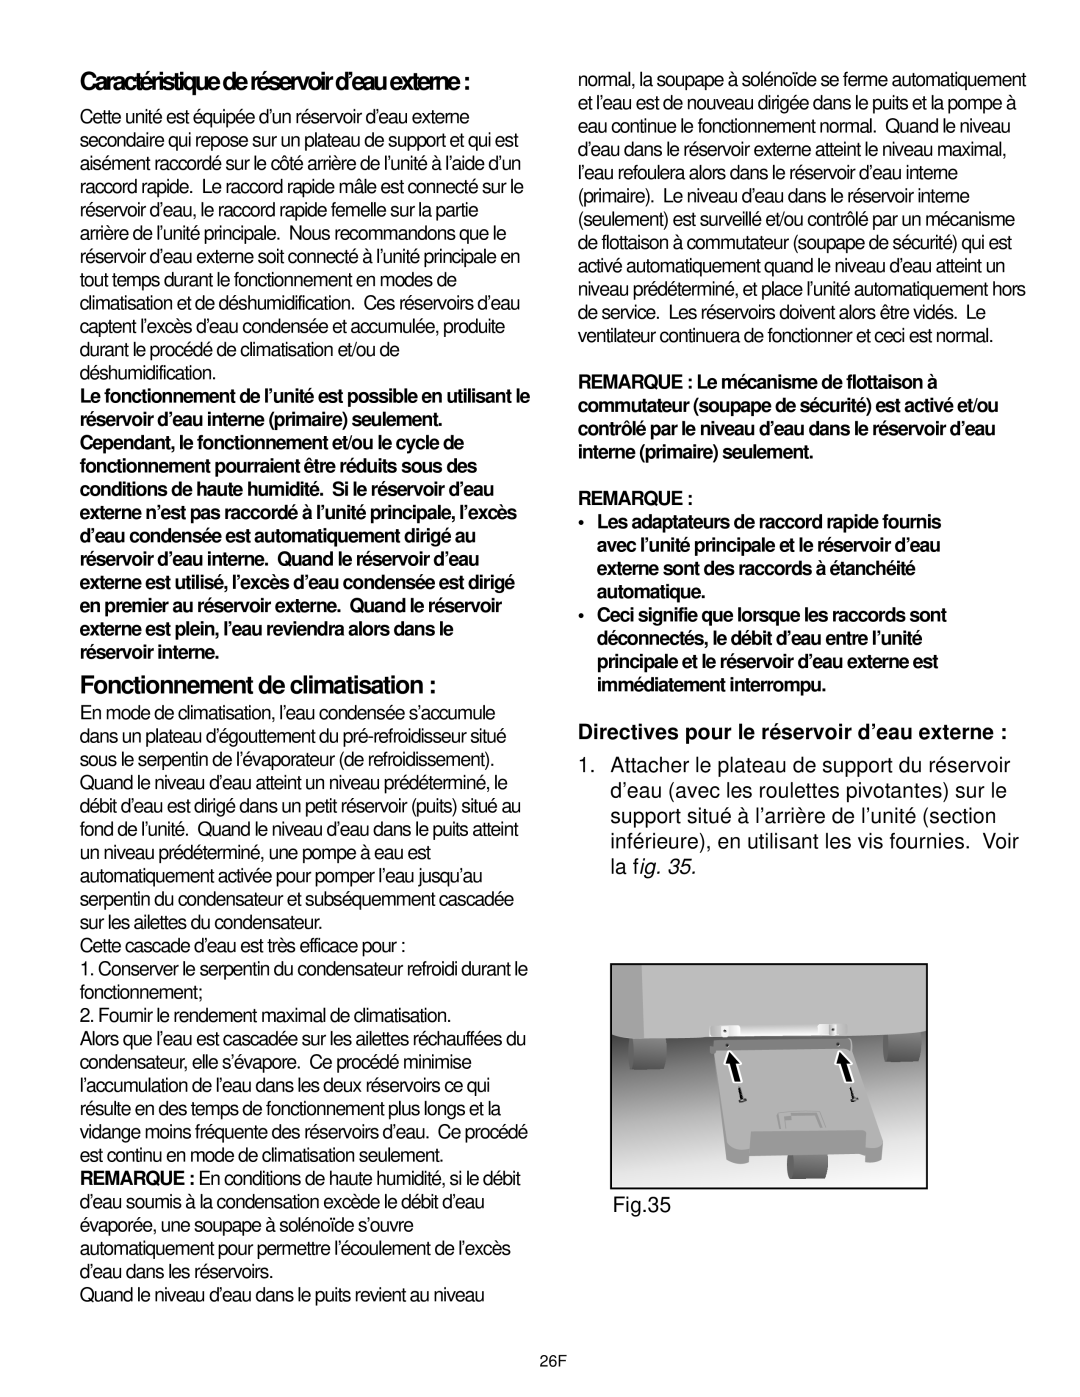 Danby DCAP 12030, DPAC9030 manual Fonctionnement de climatisation, Caractéristiquederéservoird’eauexterne, Remarque 